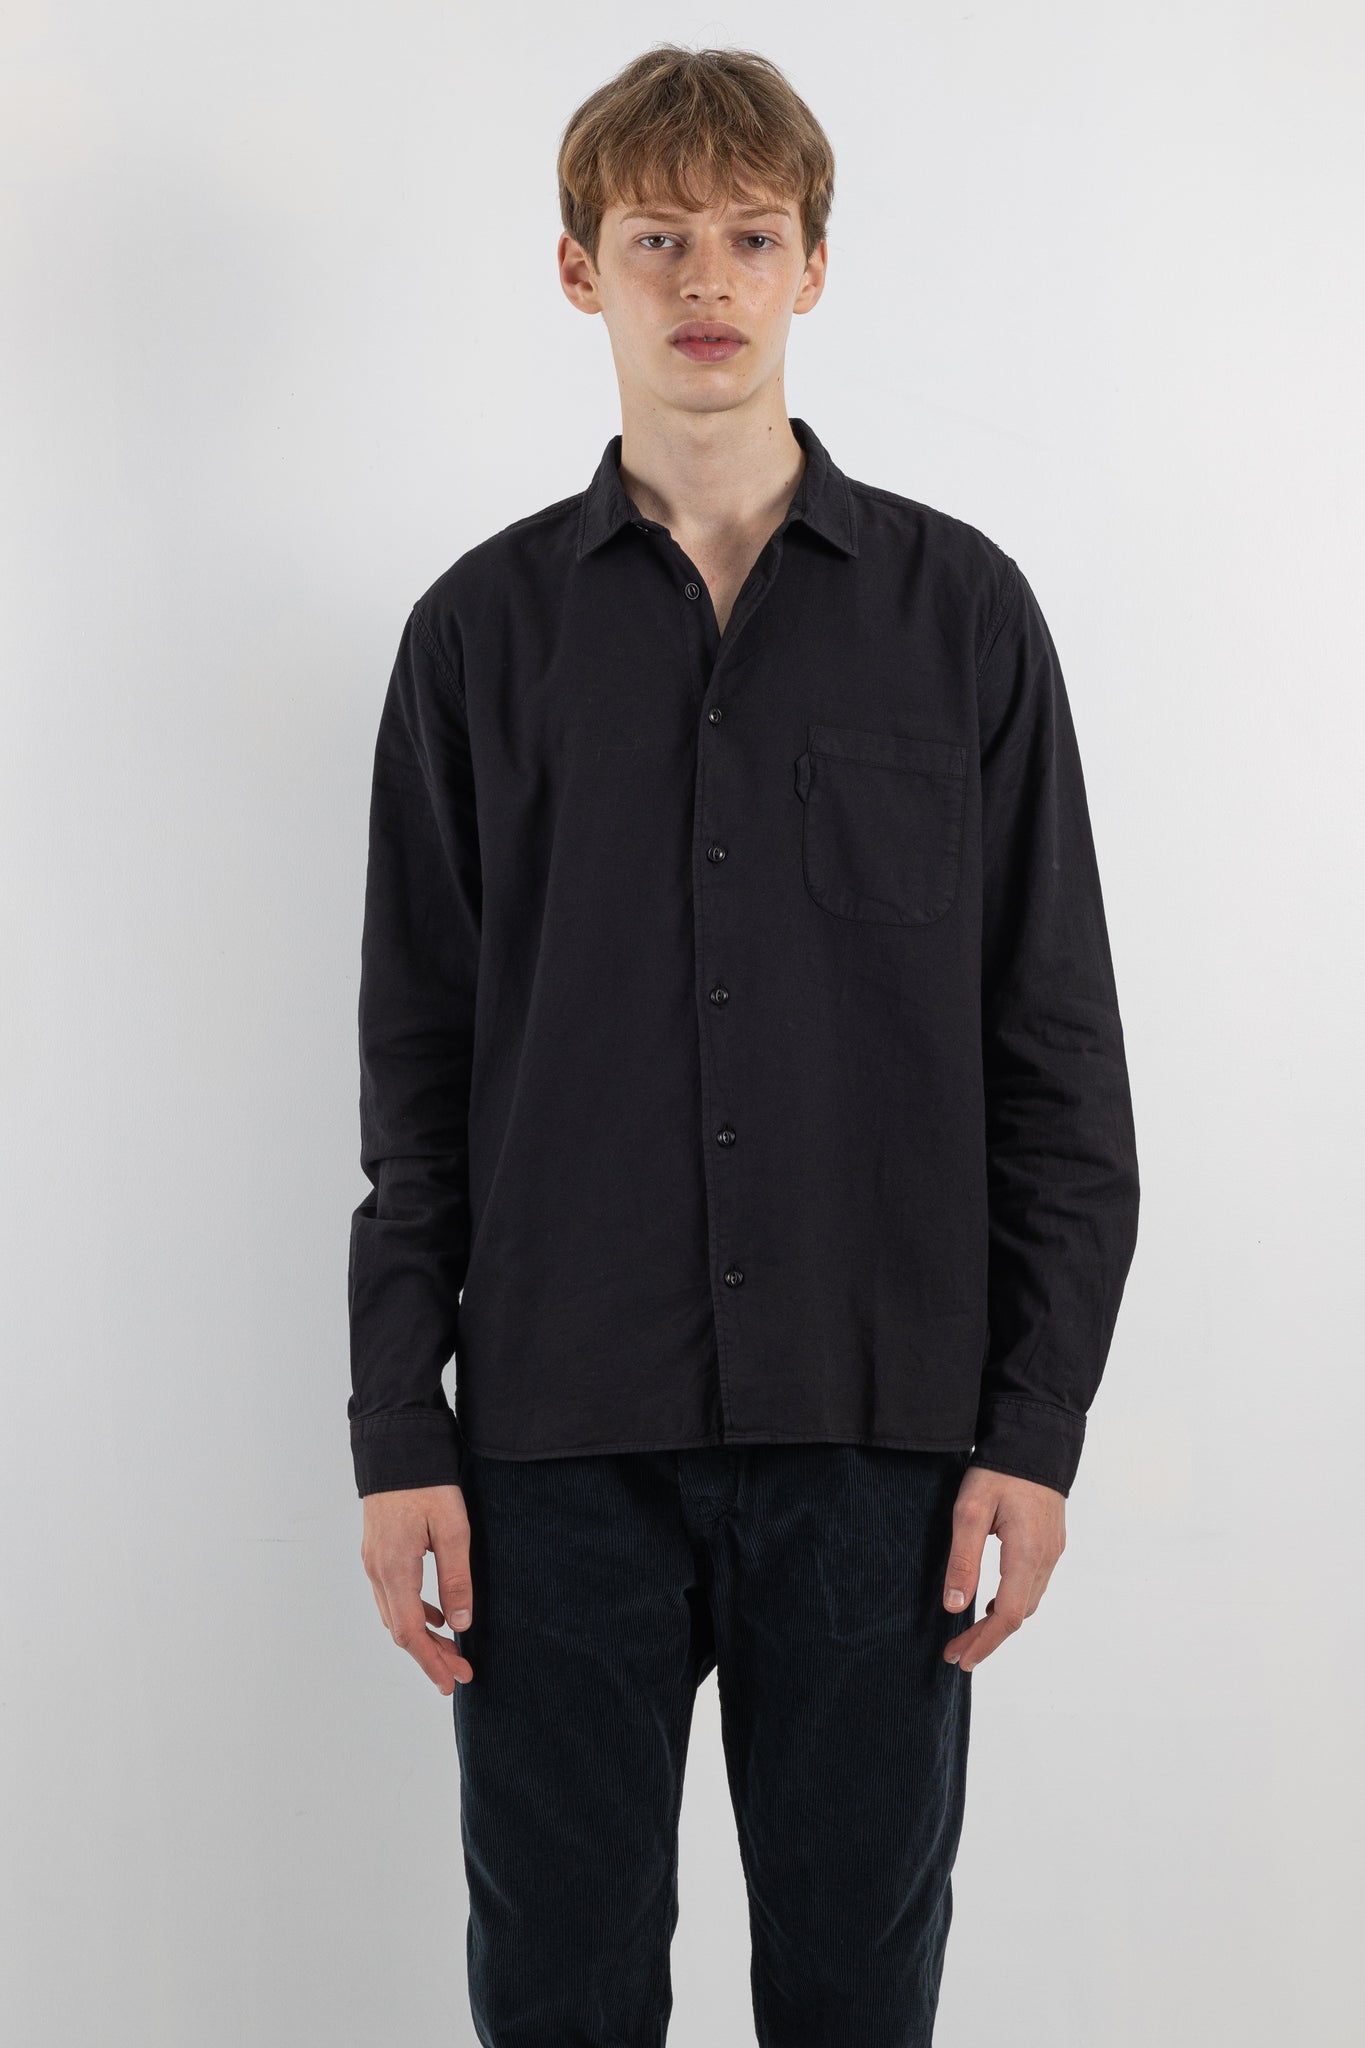 Mens shirt | YMC Curtis shirt | The Standard Store